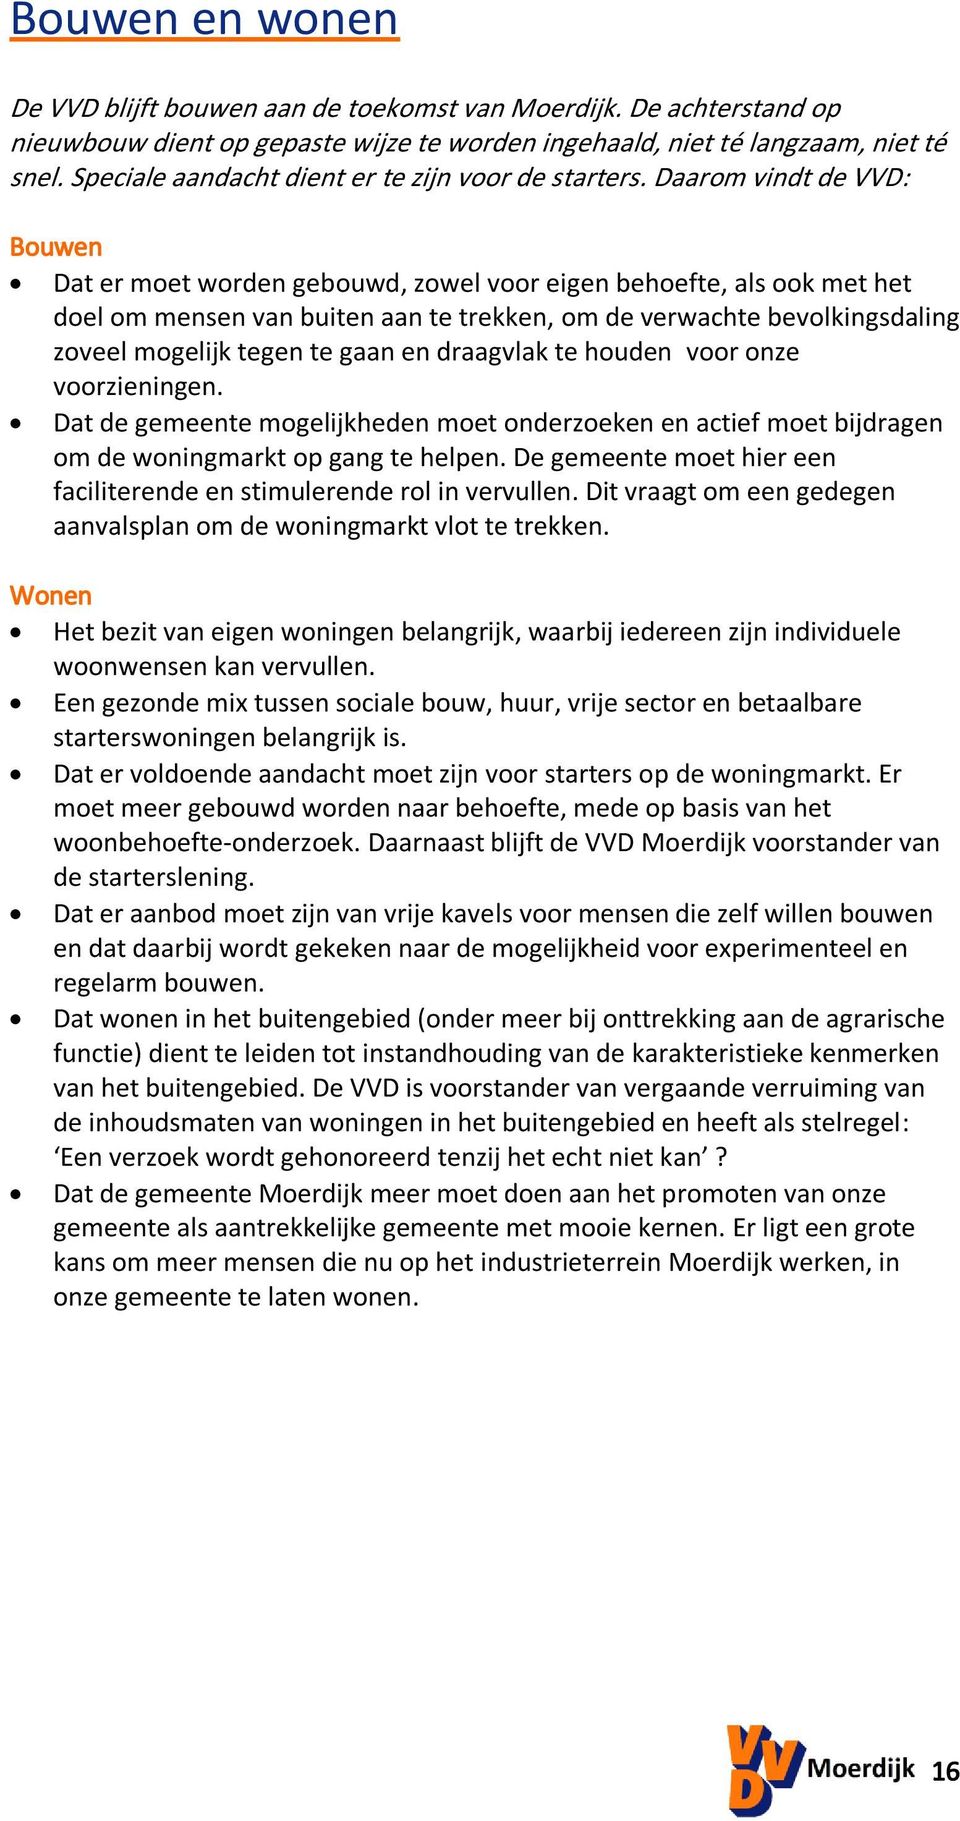 Daarom vindt de VVD: Bouwen Dat er moet worden gebouwd, zowel voor eigen behoefte, als ook met het doel om mensen van buiten aan te trekken, om de verwachte bevolkingsdaling zoveel mogelijk tegen te